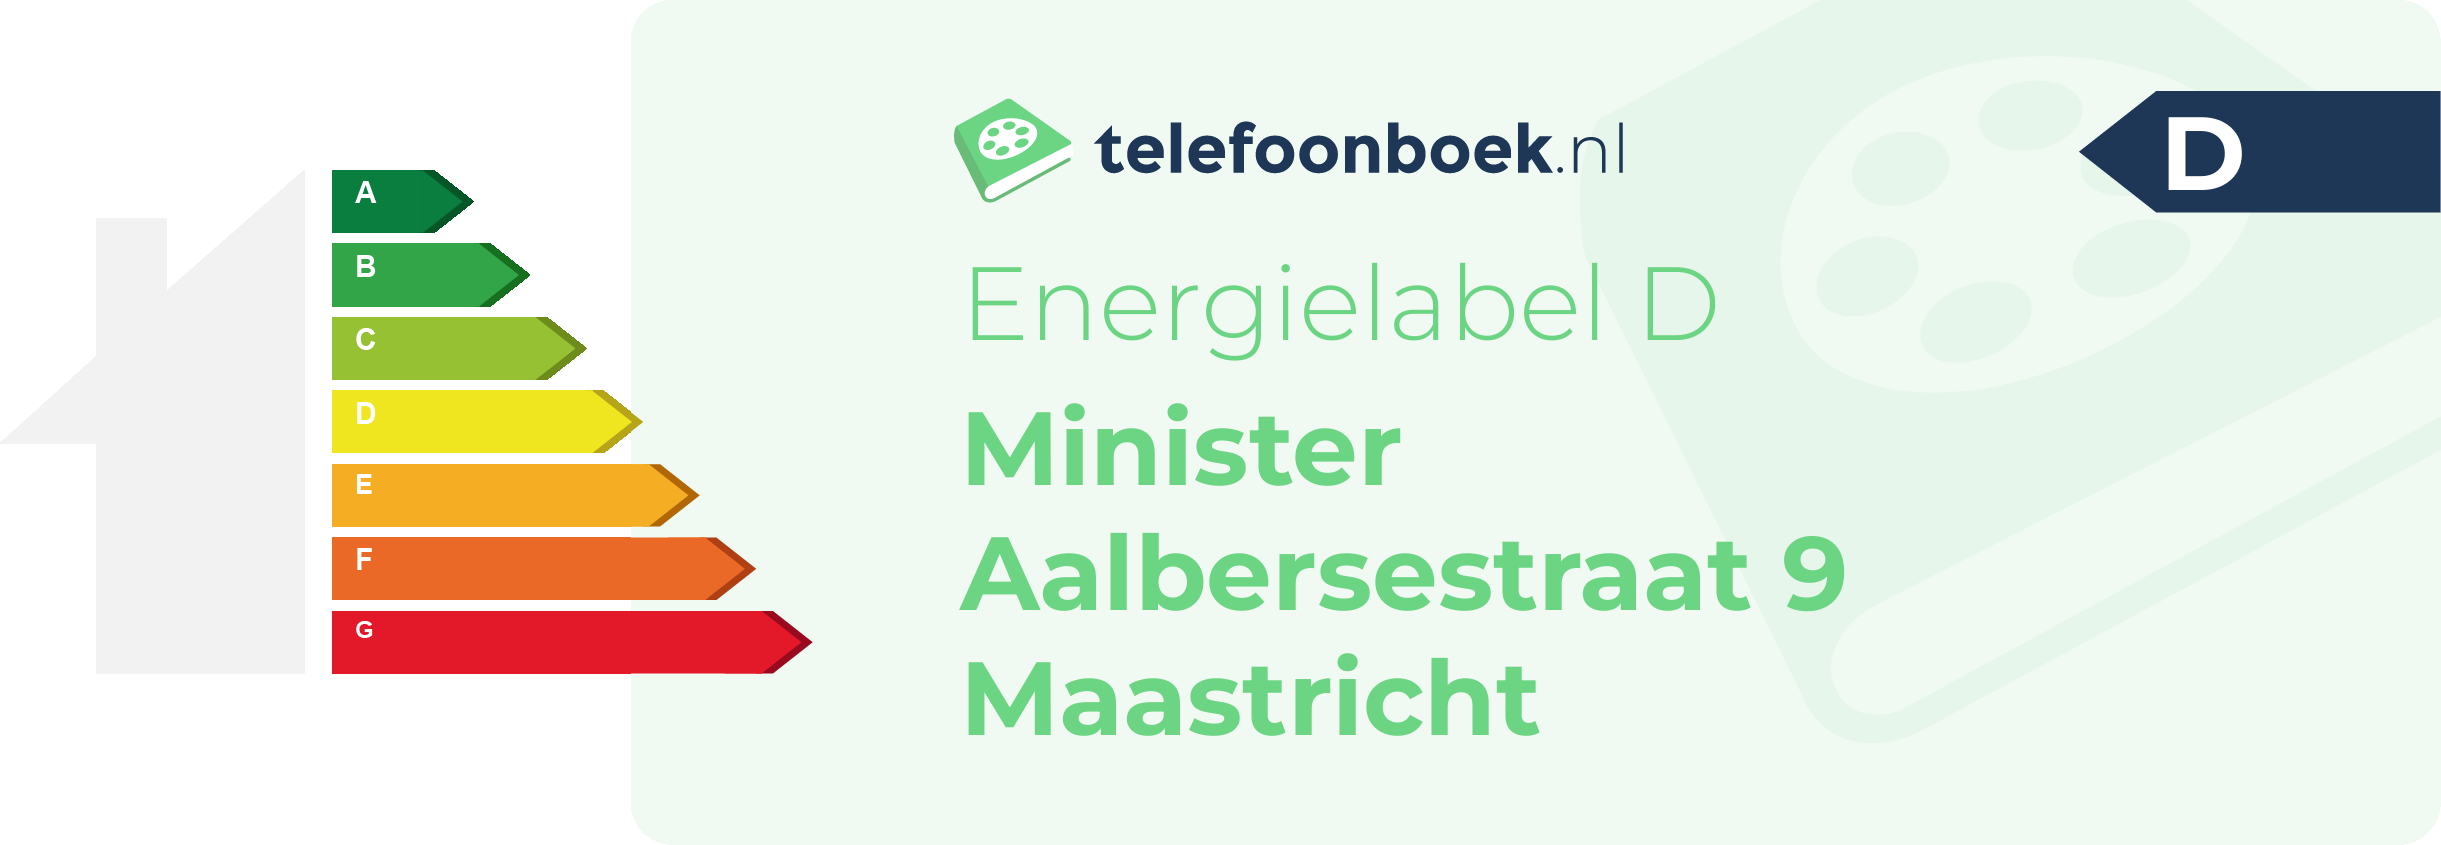 Energielabel Minister Aalbersestraat 9 Maastricht